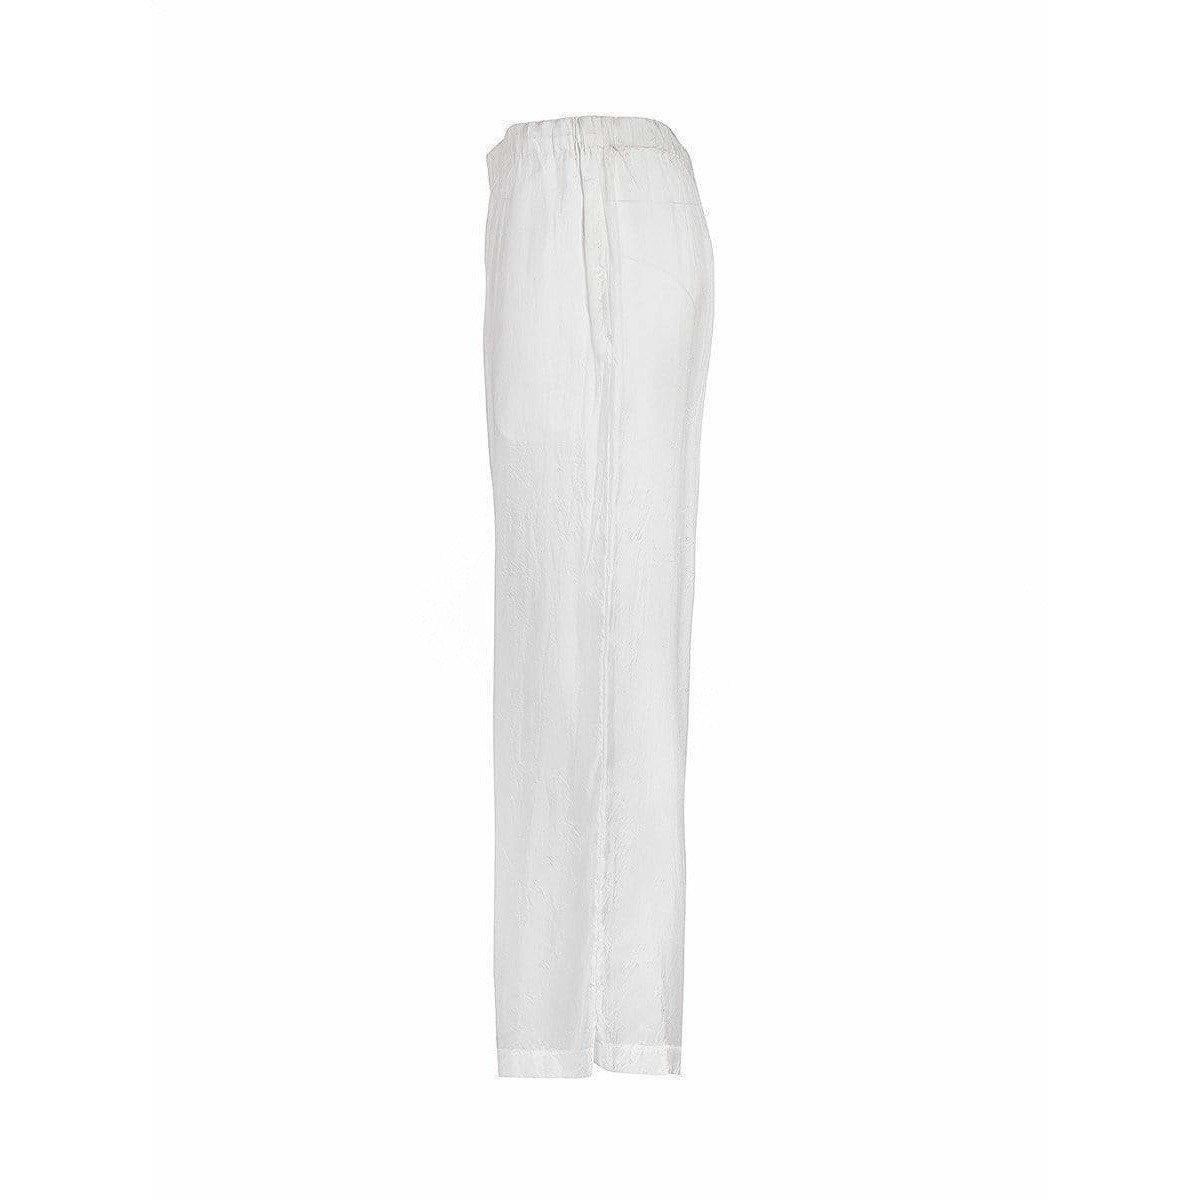 Weiche Seidenhose mit geradem Bein in Weiß mit Seitennahttaschen, Seitennahtschlitzen am Knöchel und einem bequemen elastischen Bund mit innenliegendem Kordelzug von Comme des Garçons im Vintage-Stil.